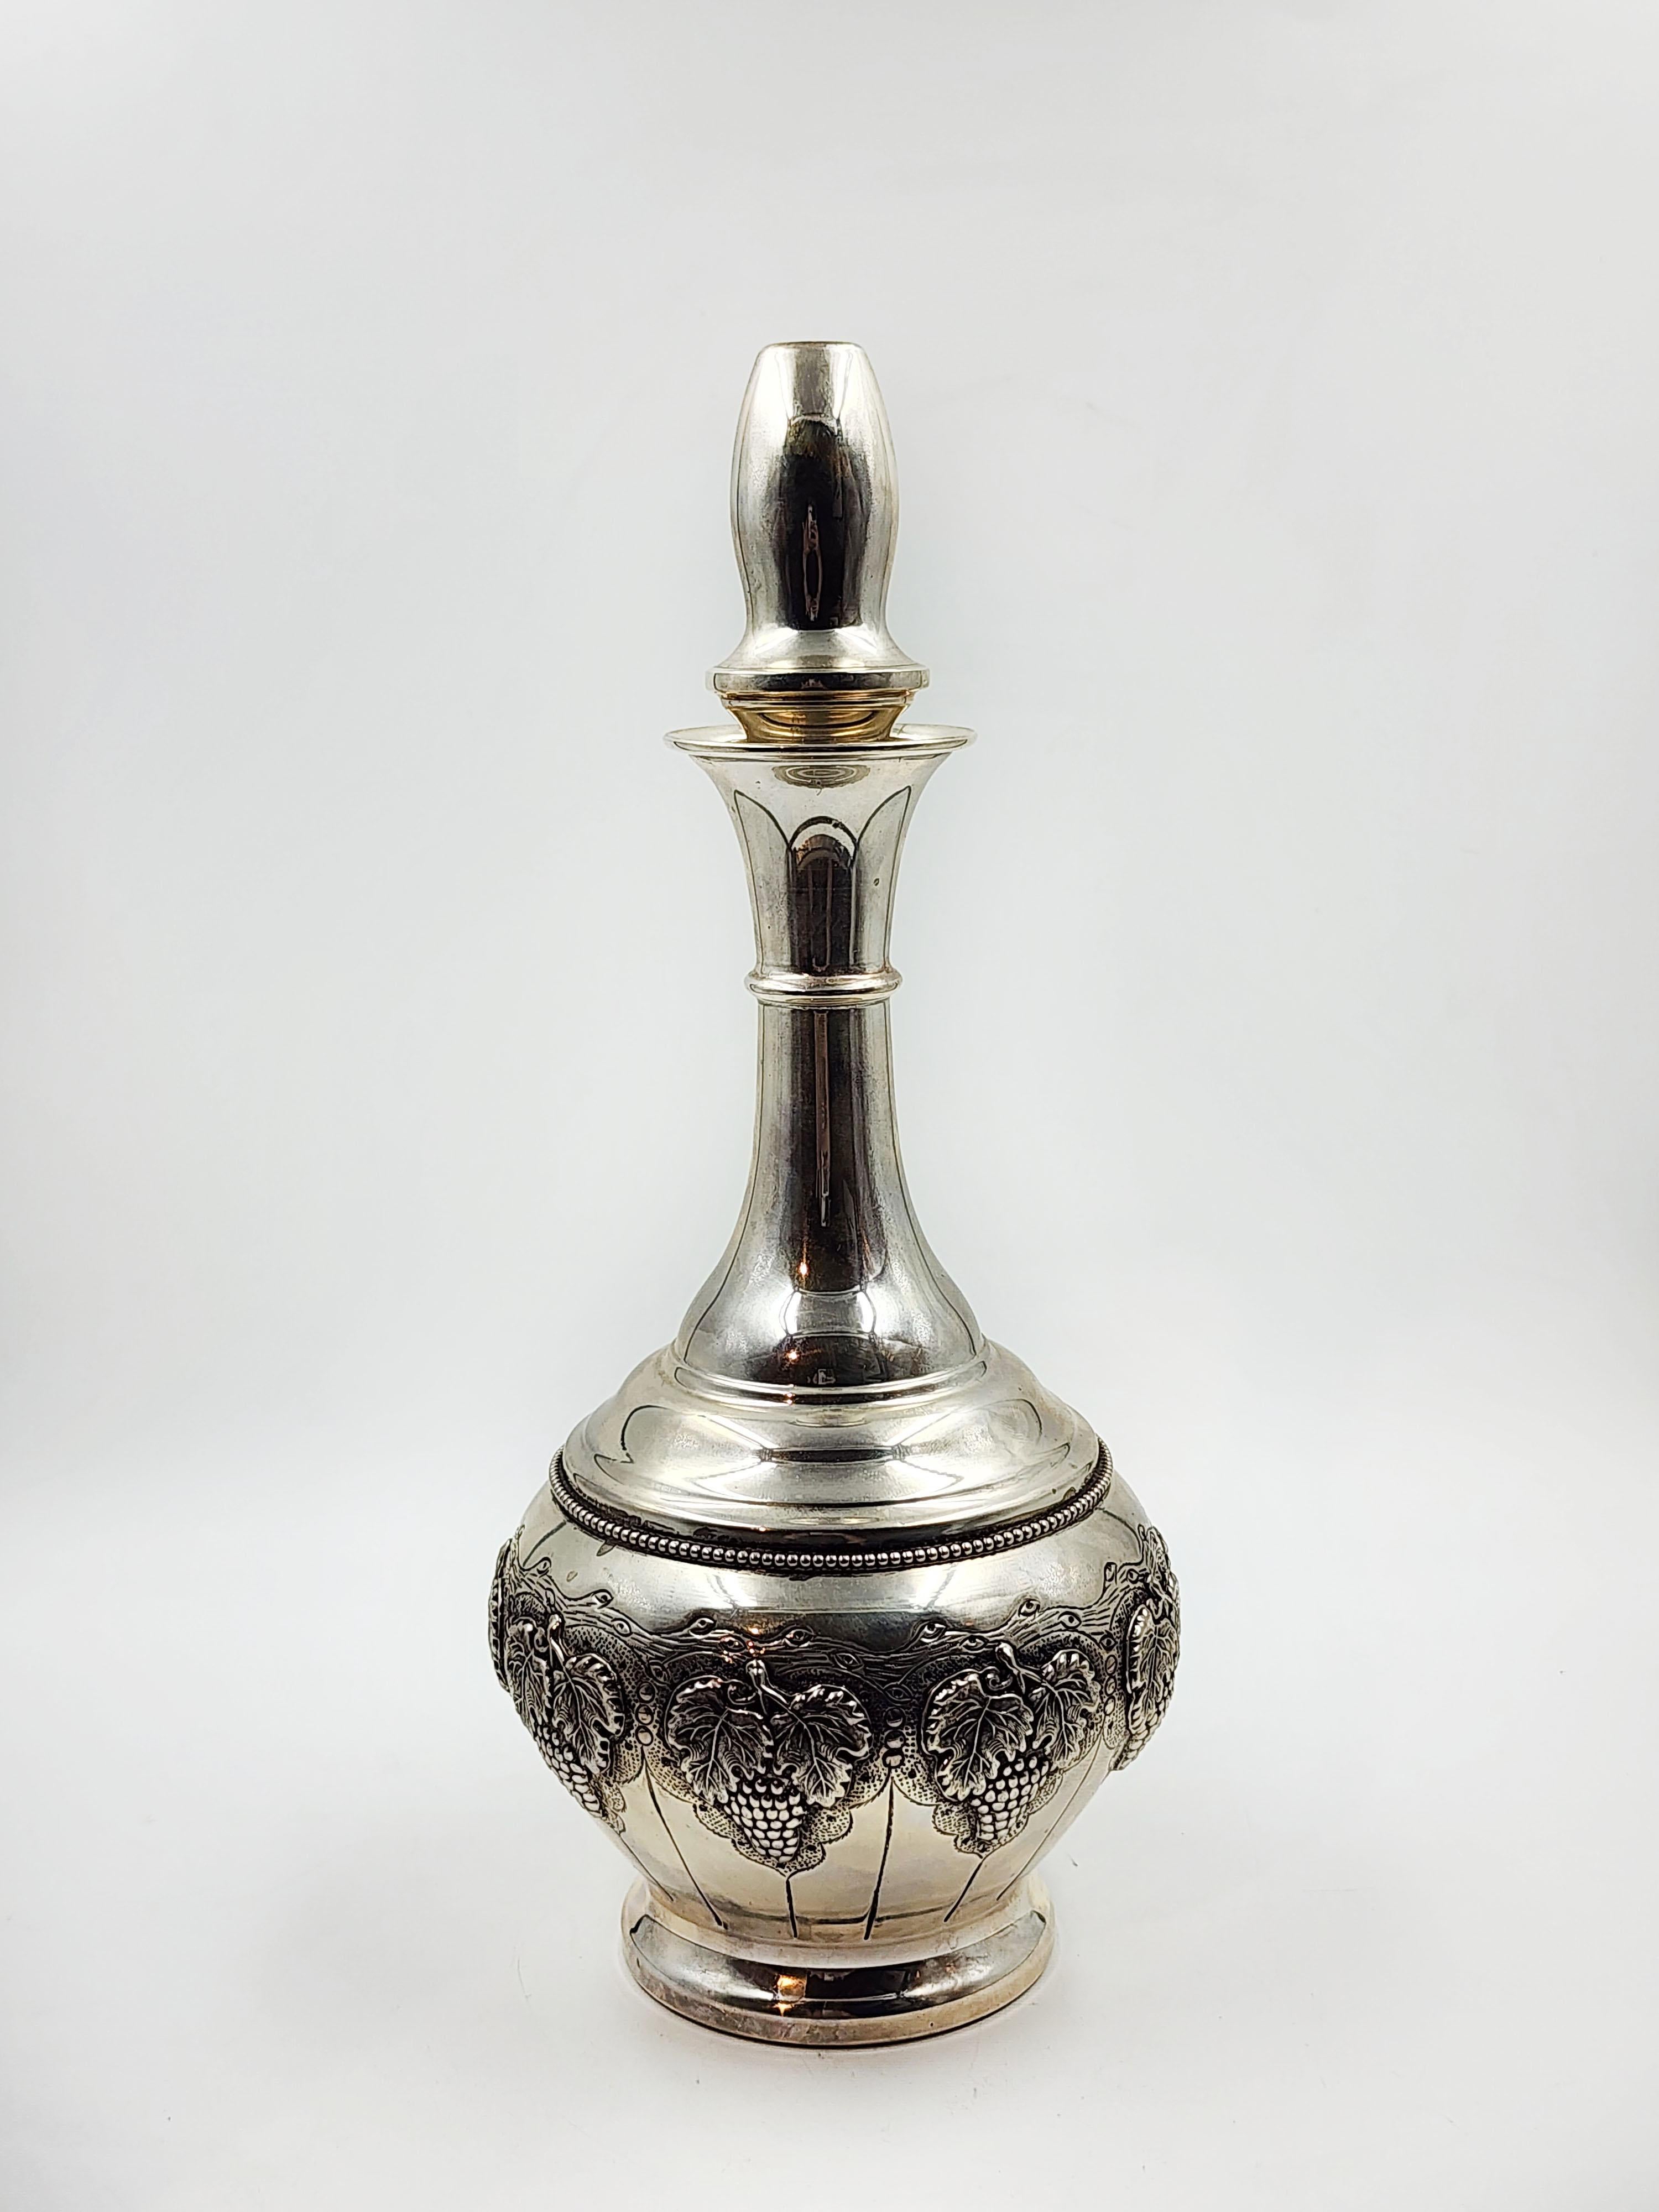 Judaica Silberne Likörflasche aus Judaica von HAZORFIM
Wunderschöne Silberflasche mit dünnem Hals, der sich zum Boden hin verbreitert, mit einem ornamentalen Muster aus Weintrauben
Maßnahmen:
Höhe:14,5cm
Durchmesser:10,5